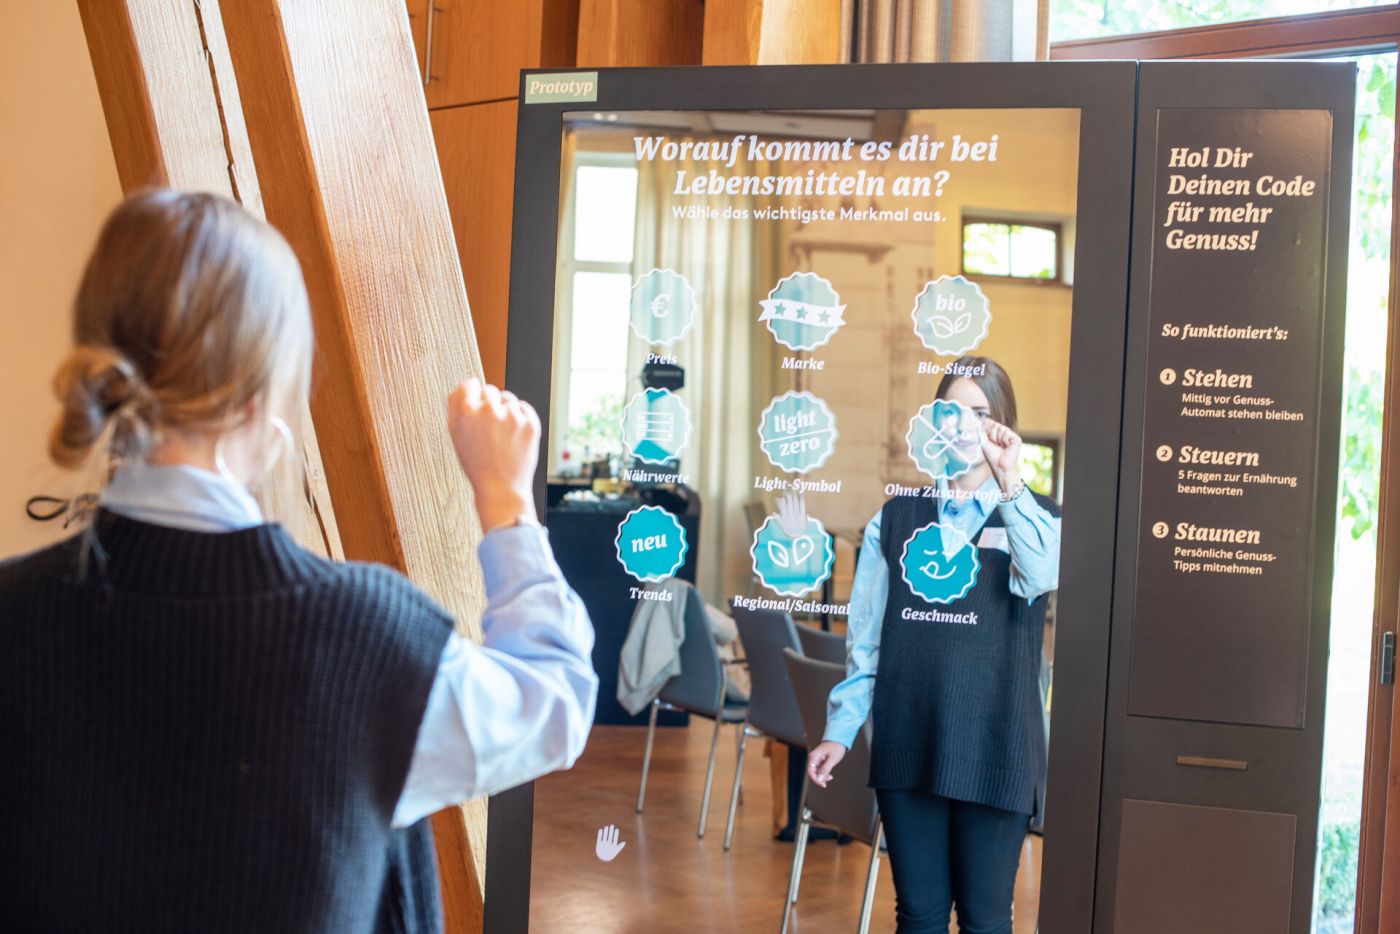 Eine Besucherin testet den Genussautomaten (Foto: FH Münster/Michelle Liedtke)